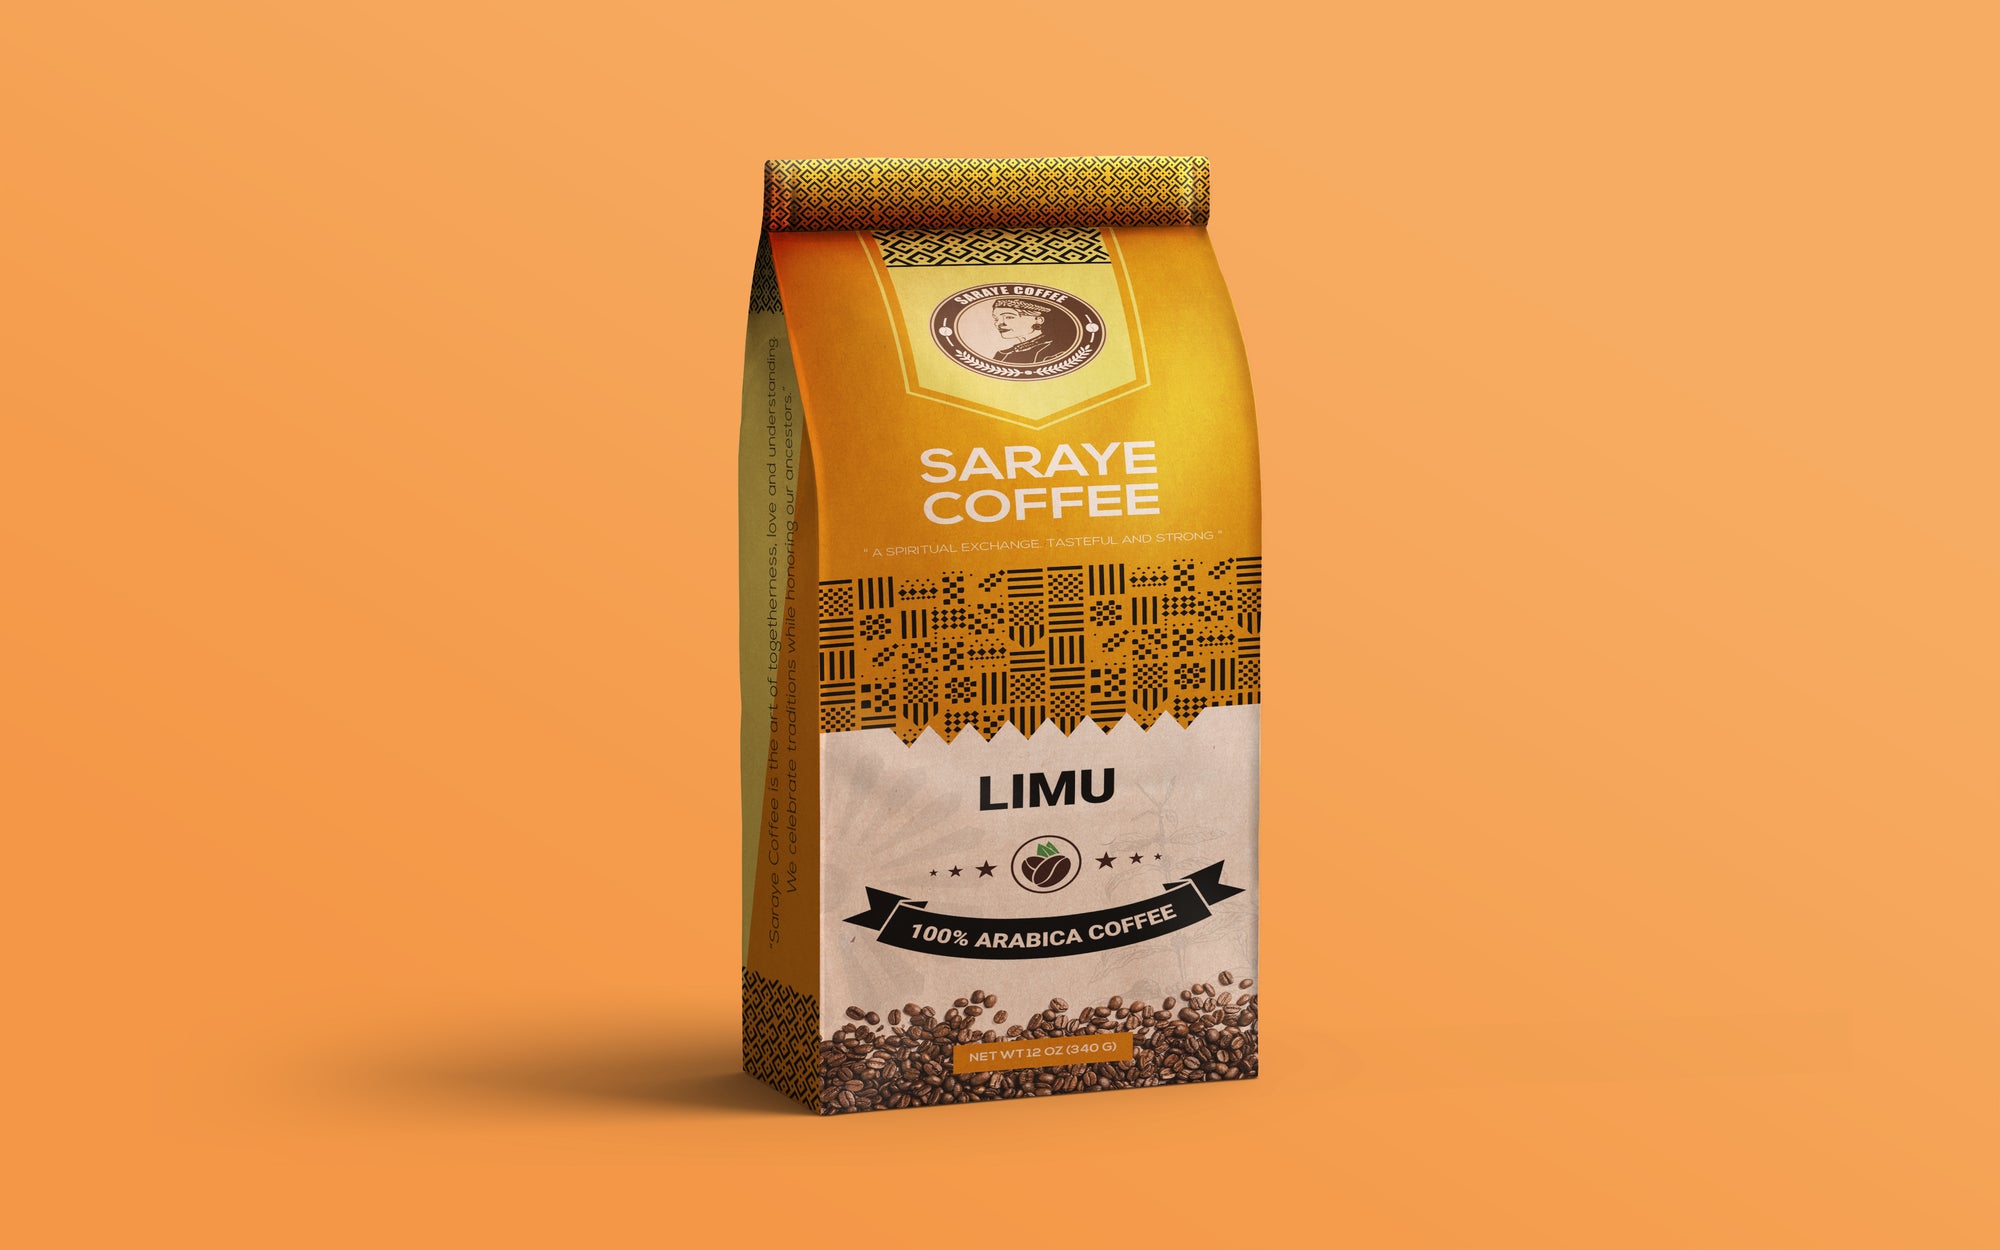 Ethiopian Limu Coffee